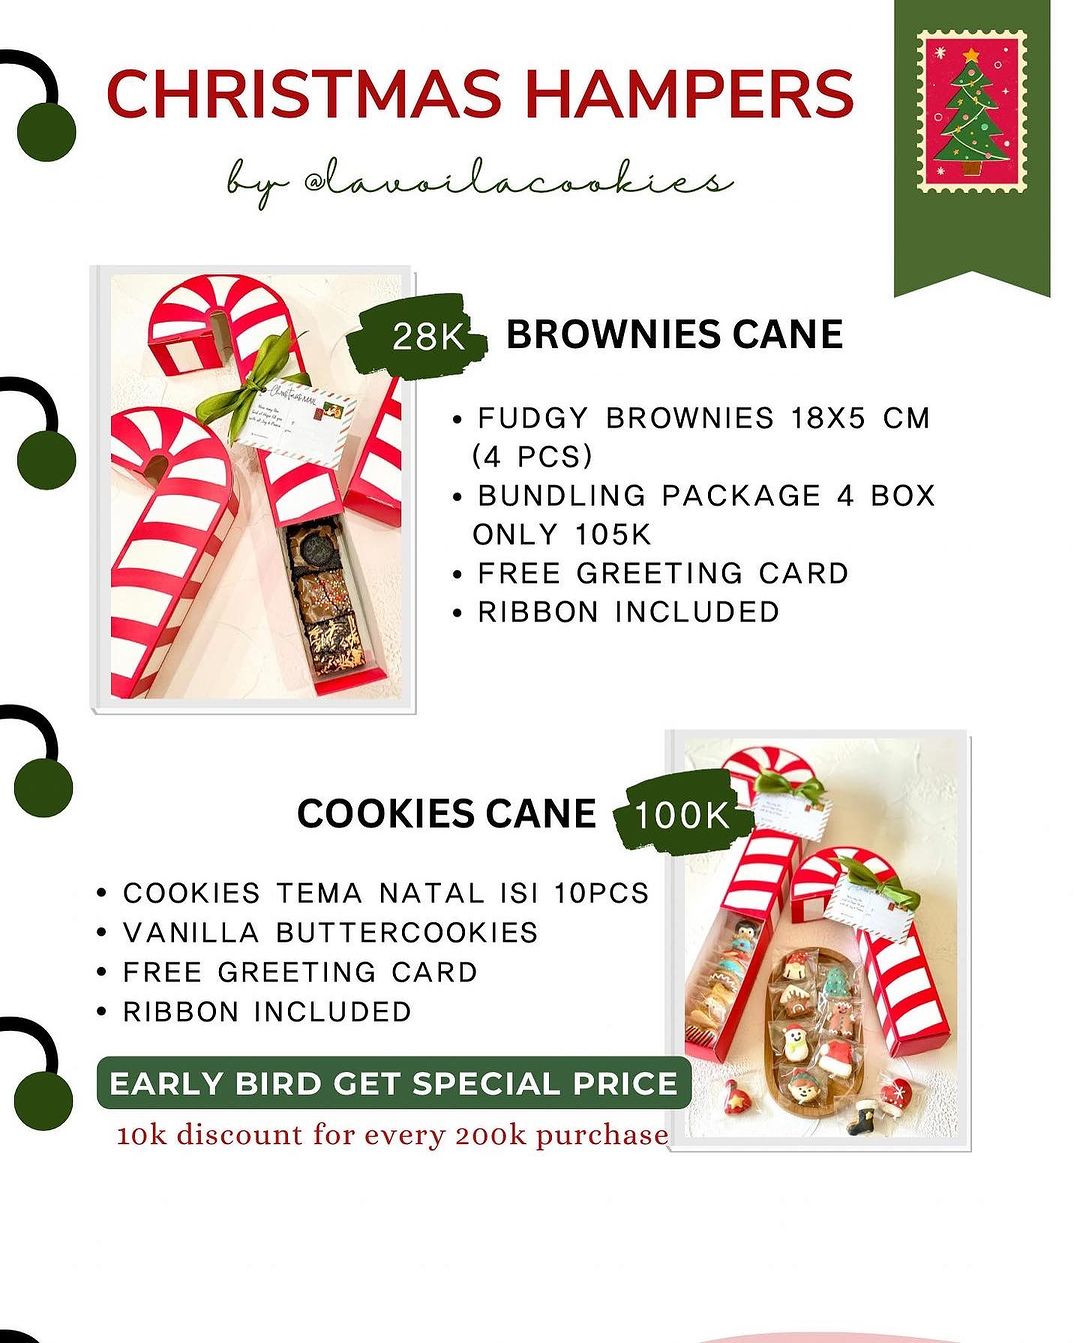 Cookies & Brownies Cane Hampers